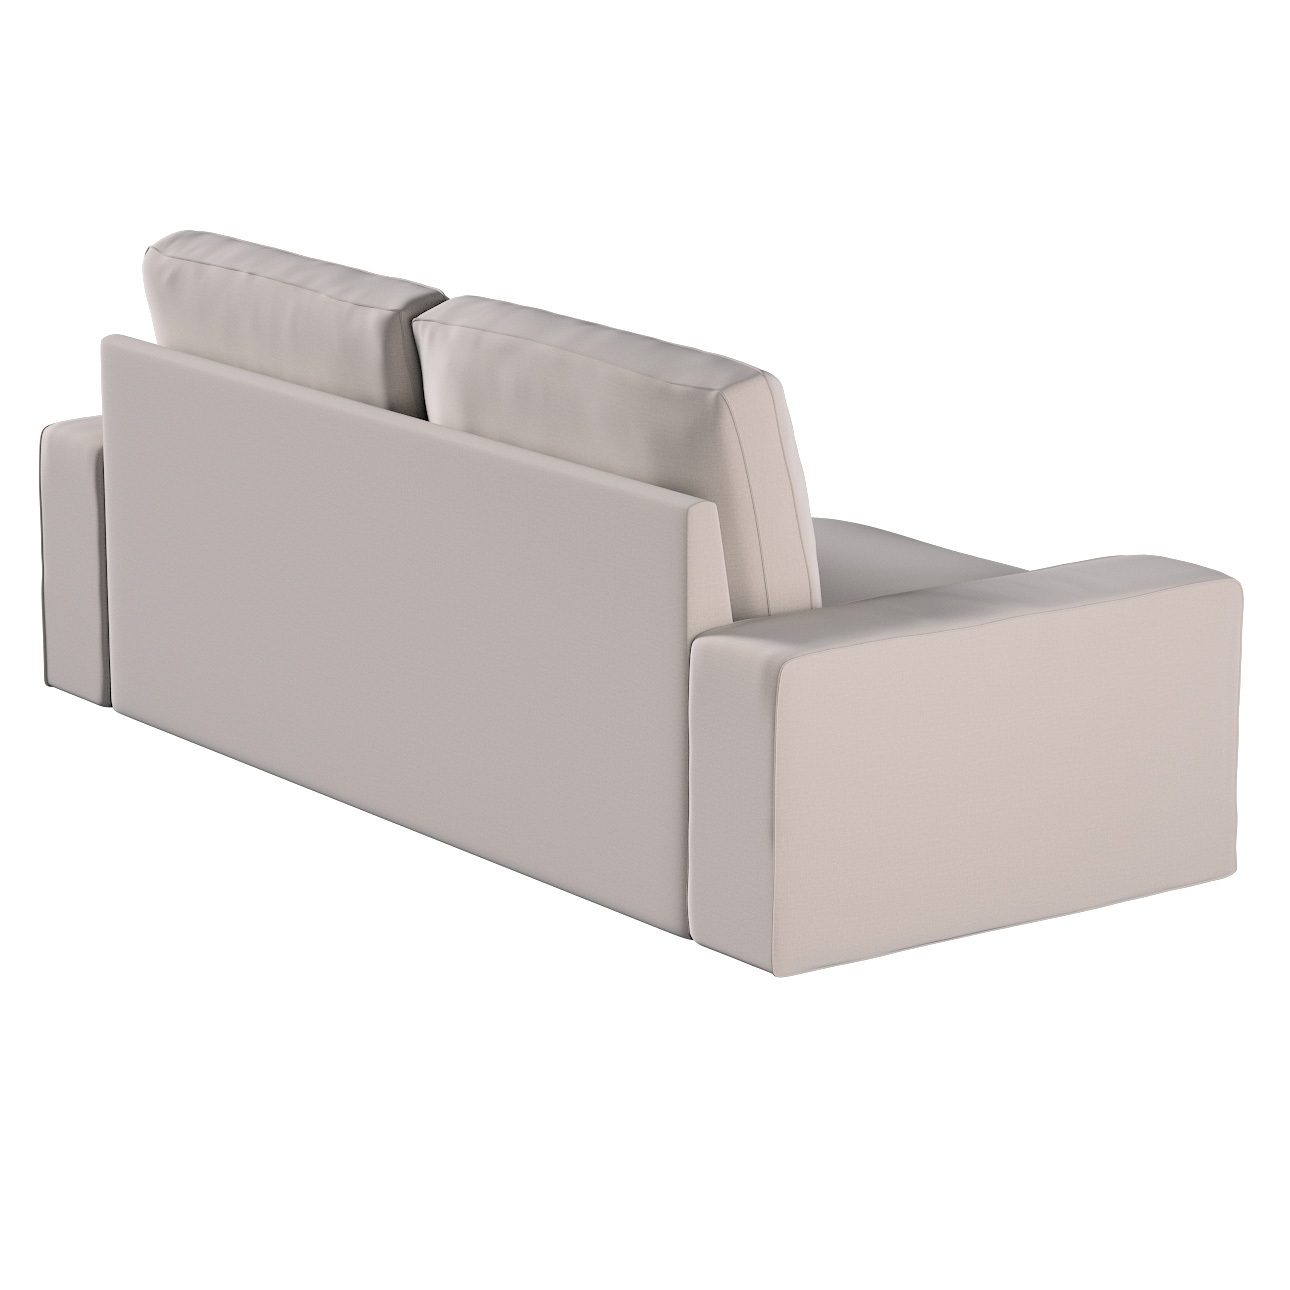 Bezug für Kivik 3-Sitzer Sofa, beige, Bezug für Sofa Kivik 3-Sitzer, Ingrid günstig online kaufen